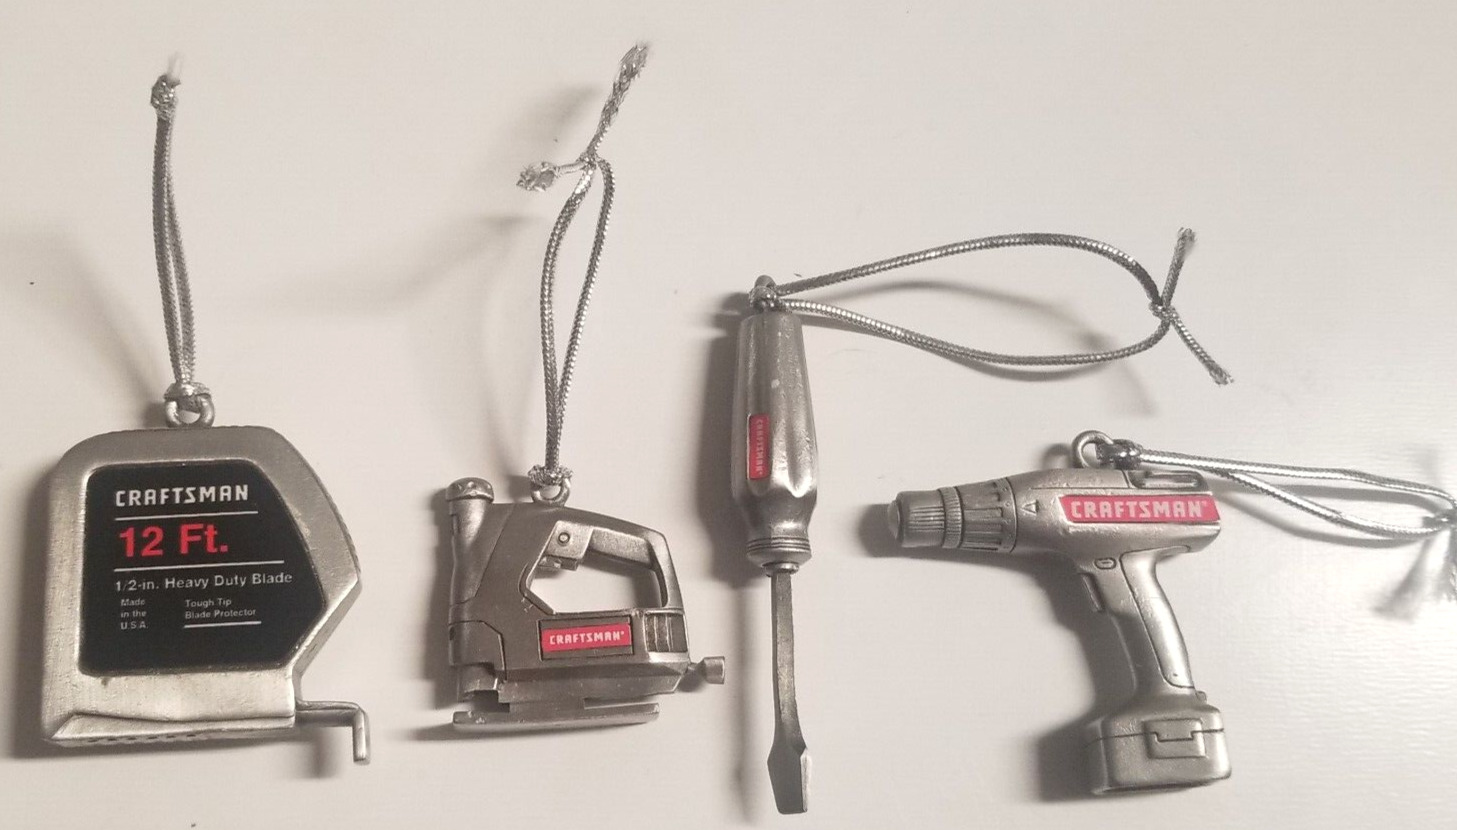 Craftsman Sears Miniature Tool Ornaments - Drill,Tape,Saw,Driver PewterUSA 1998